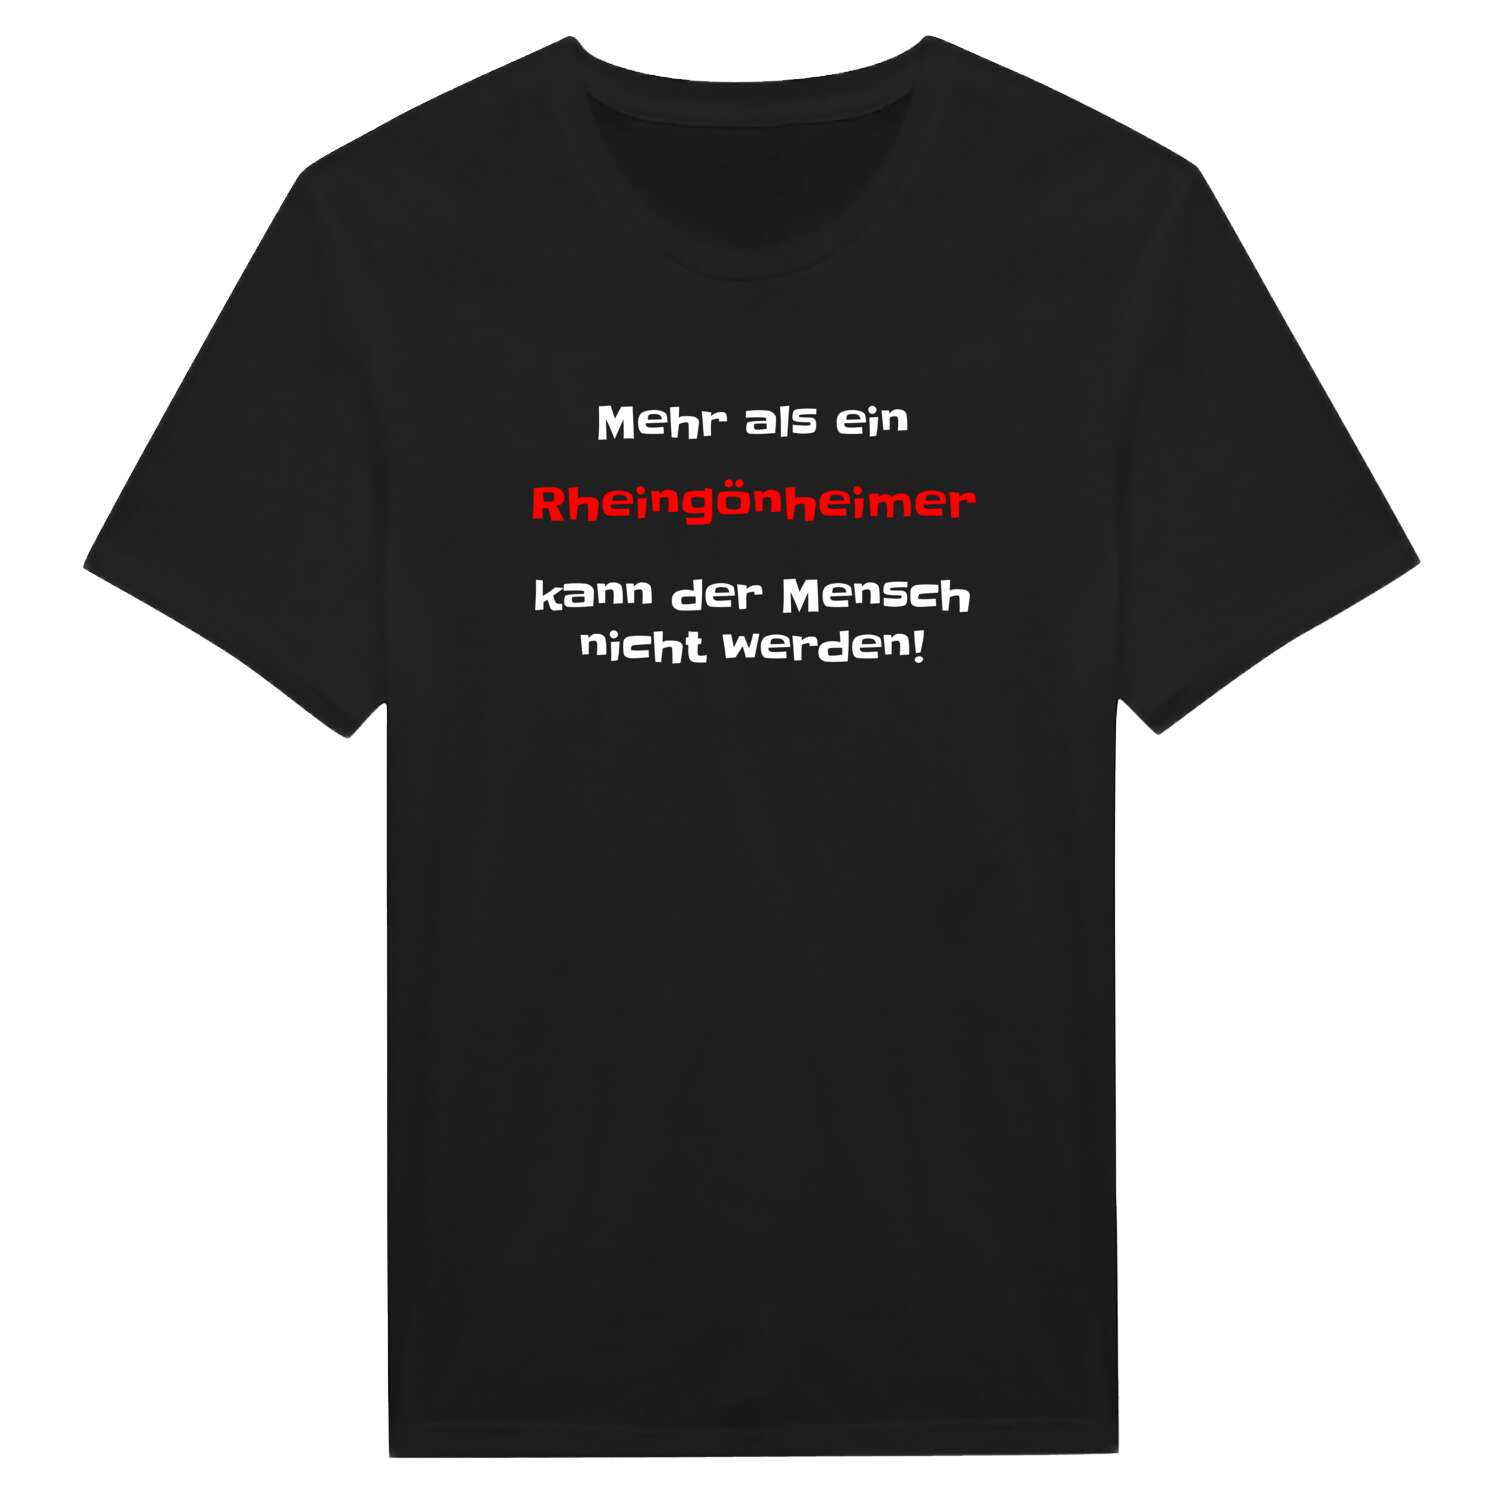 Rheingönheim T-Shirt »Mehr als ein«